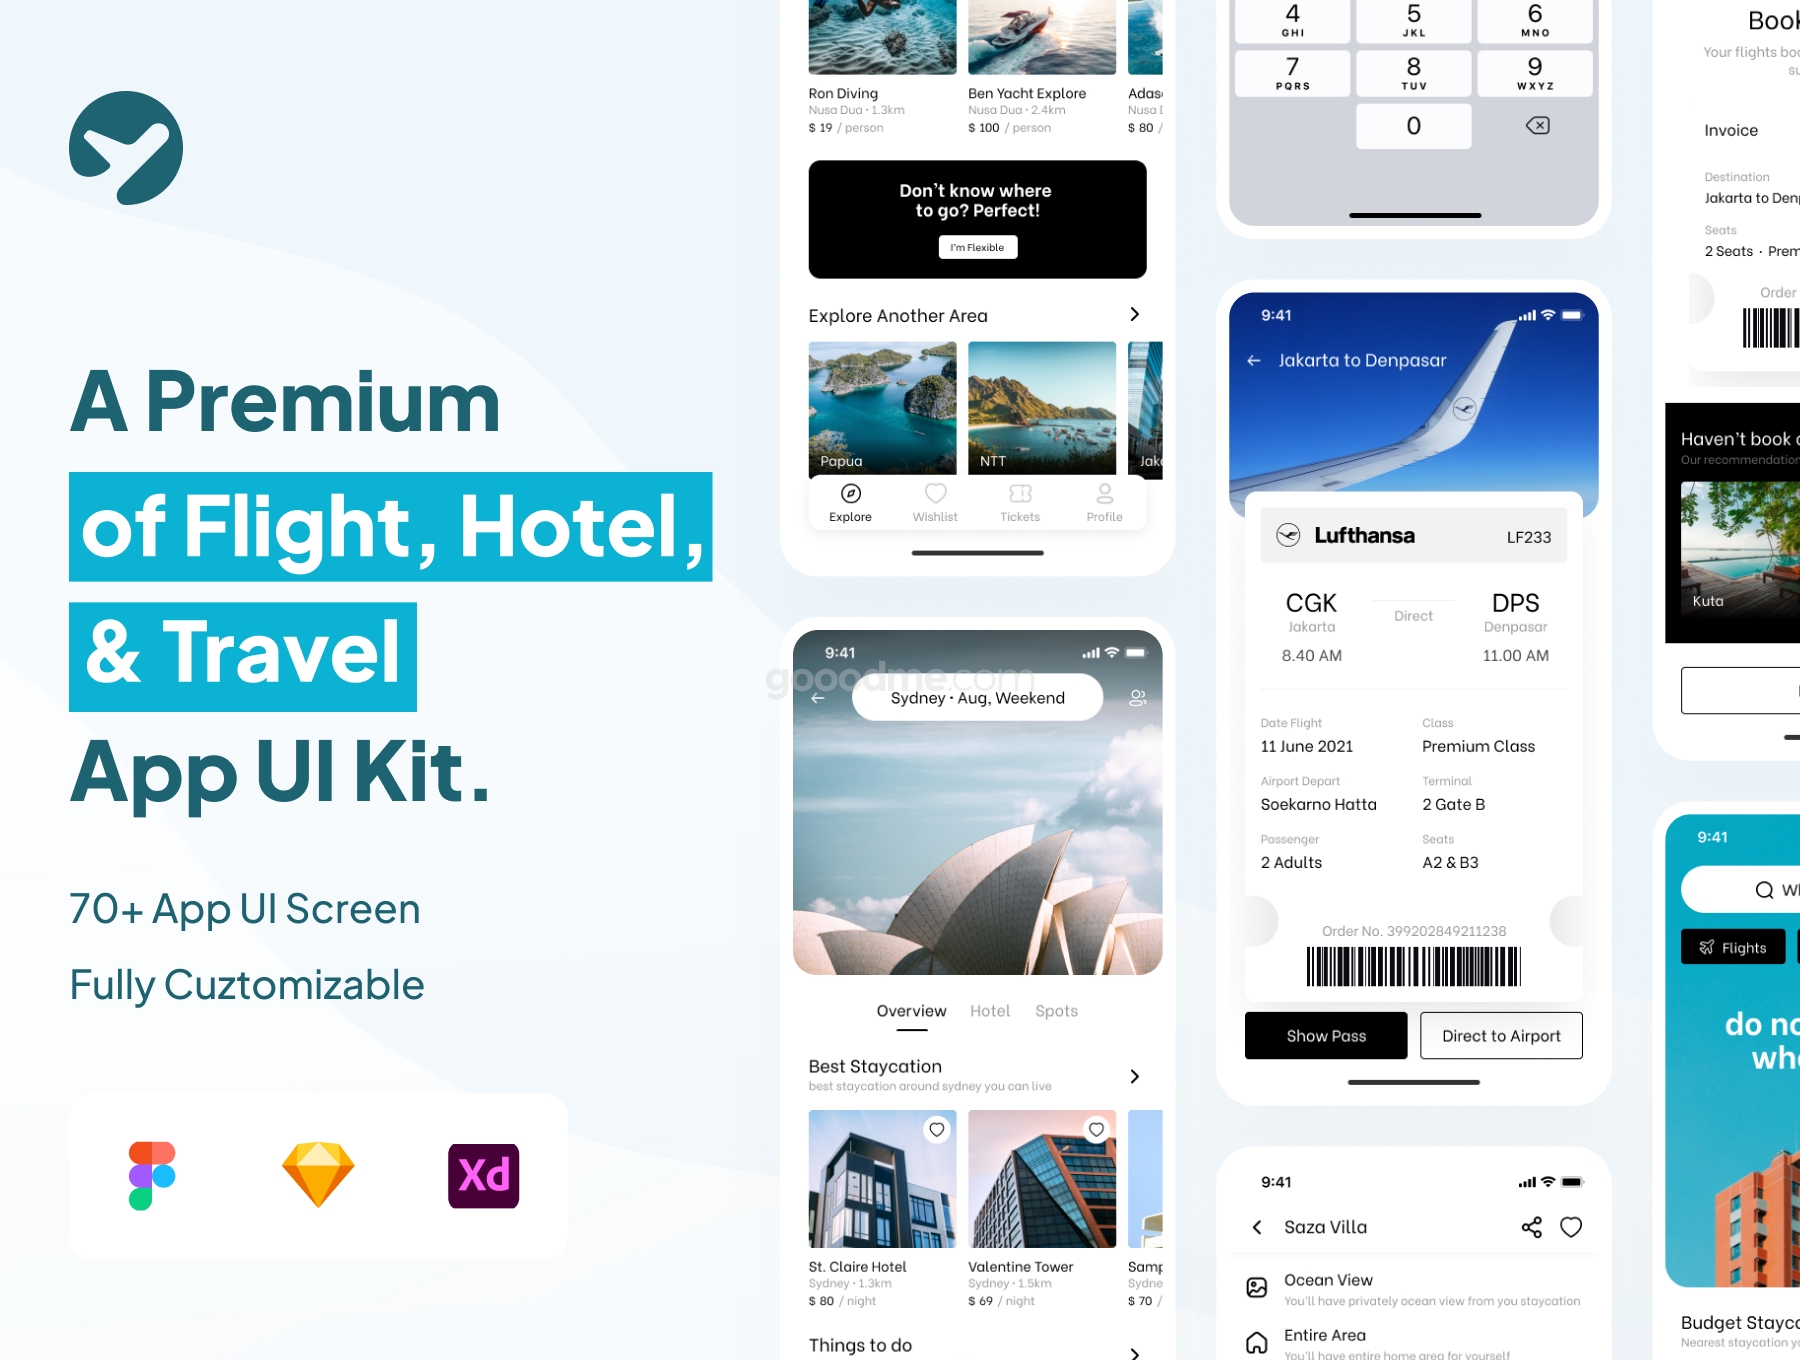 完整的航班、酒店和旅行应用 UI 套件包Kitavel – Premium Flight, Hotel & Travel App UI Kit